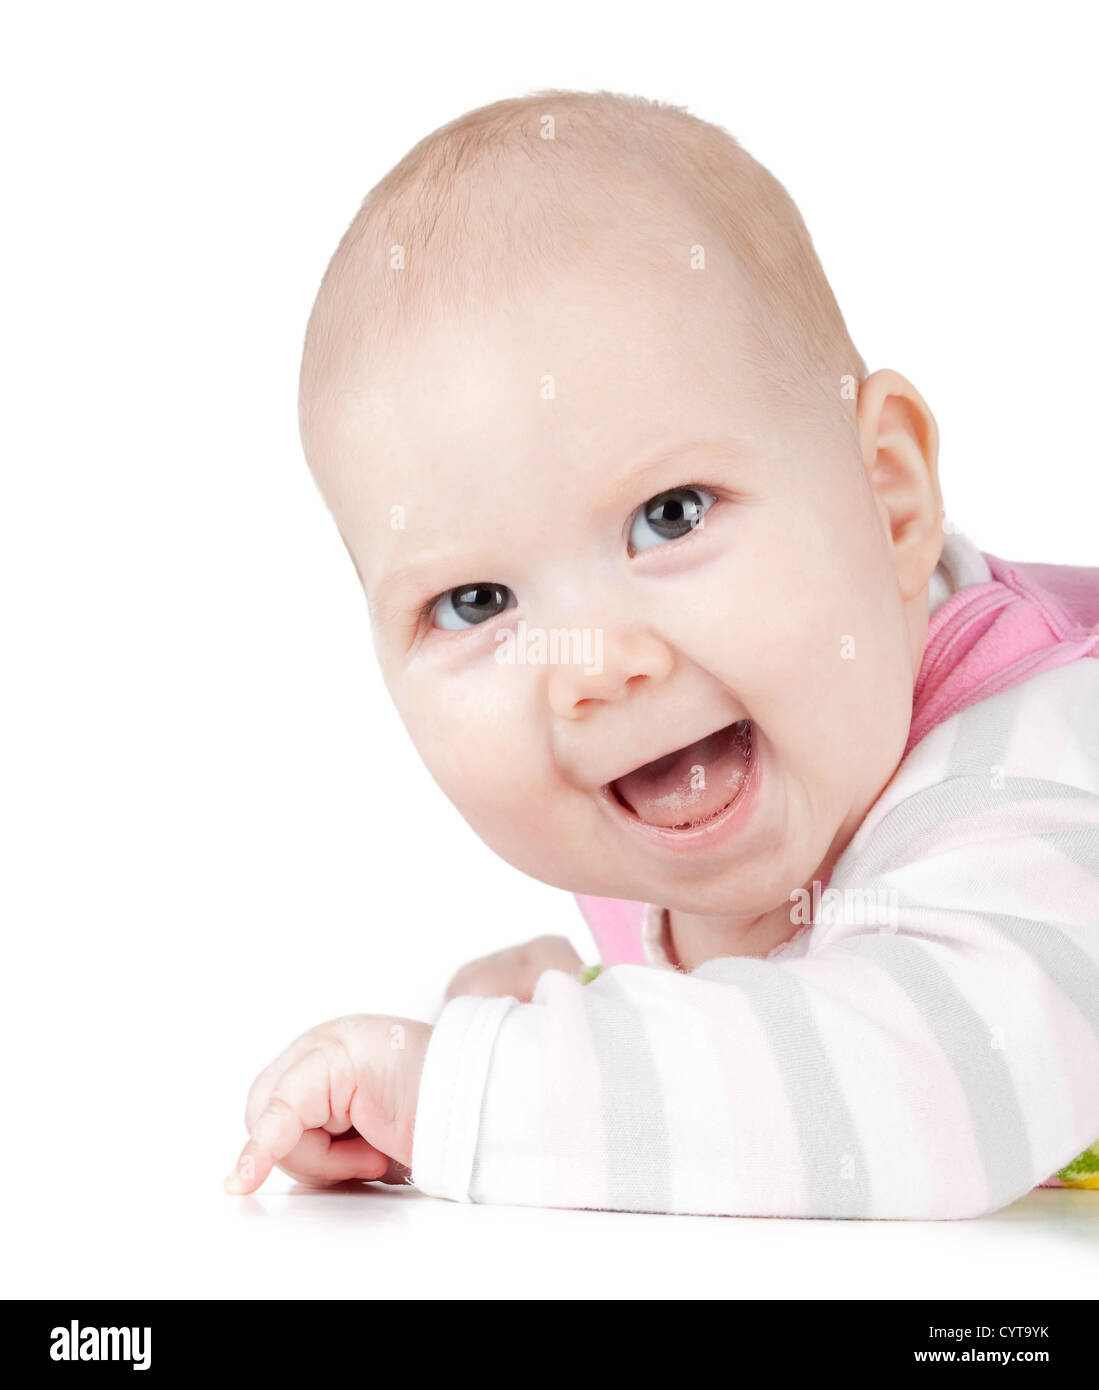 Retrato de rió pequeño bebé. Aislado sobre fondo blanco. Foto de stock